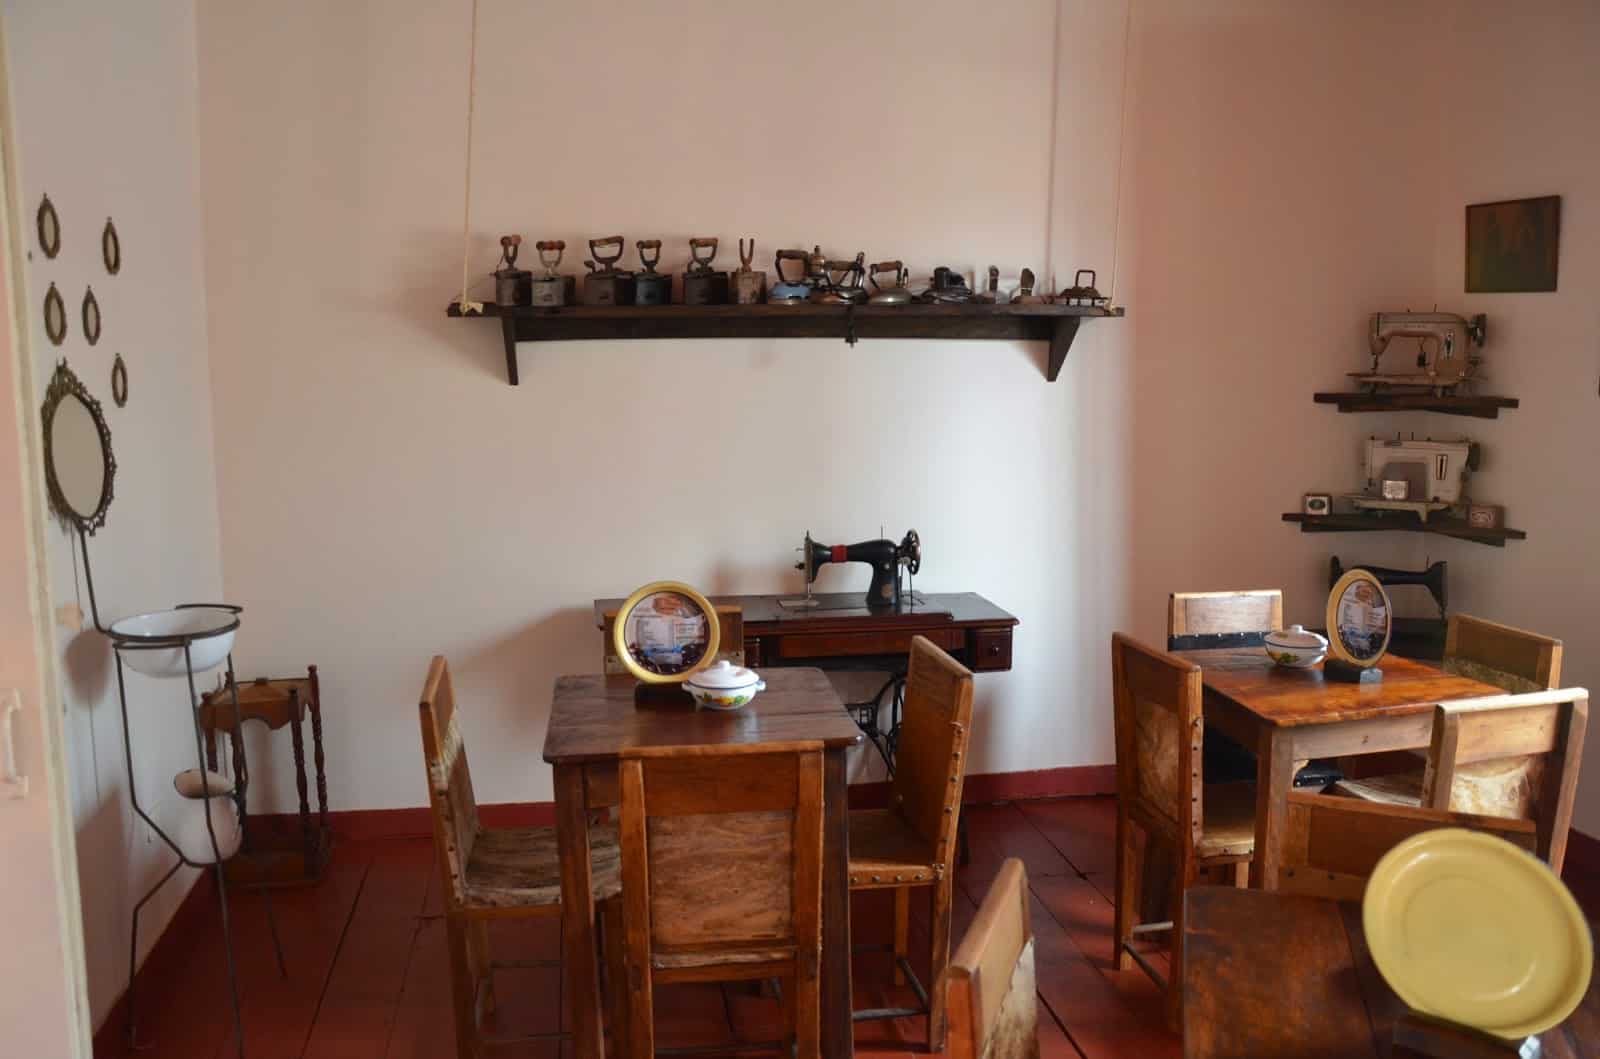 A room in the former location of La Ruana Café Tertulia